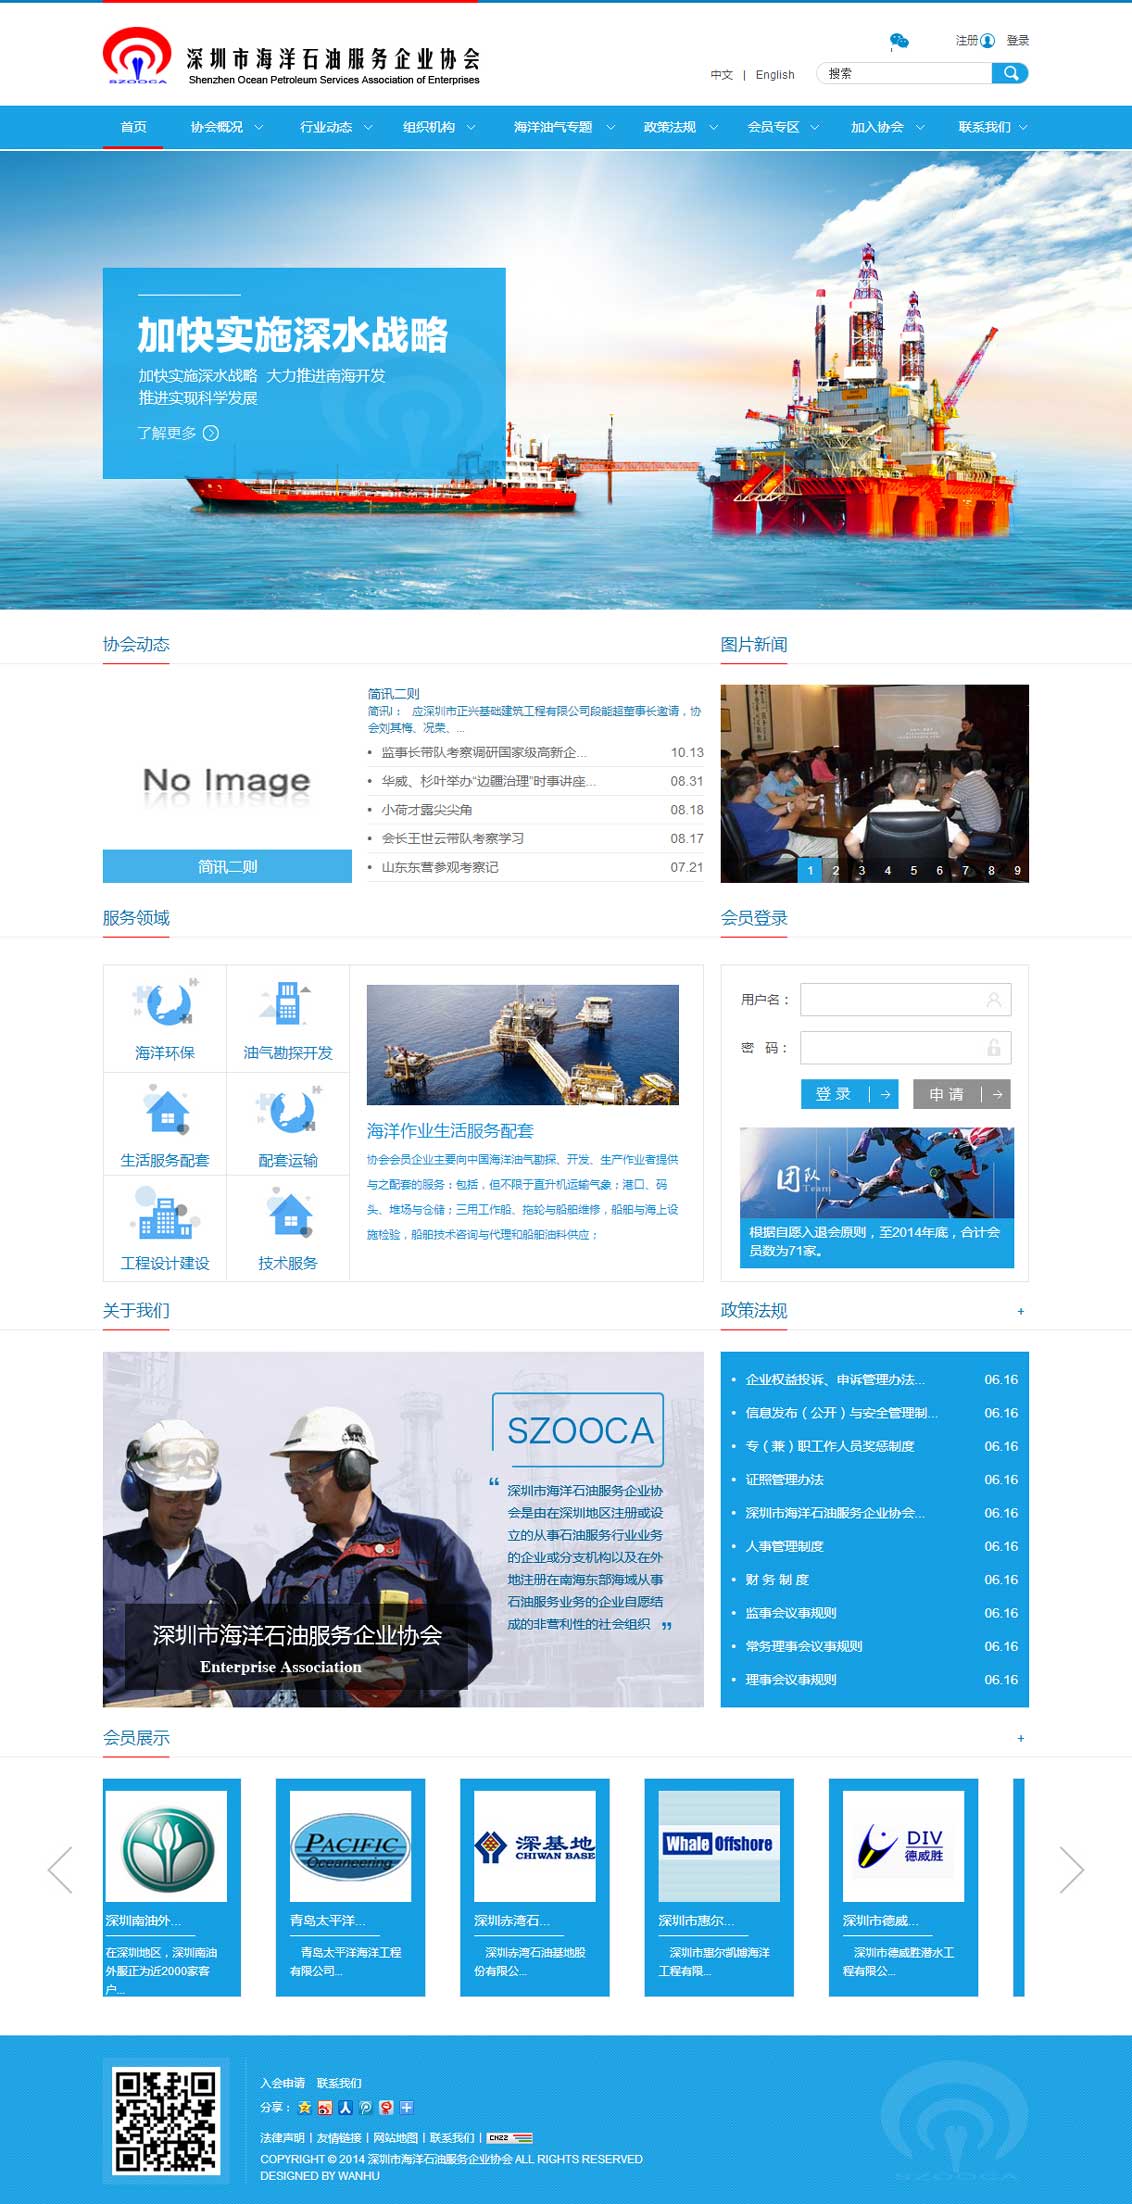 深圳市海洋石油服务企业协会-万户网络网站建设合作项目